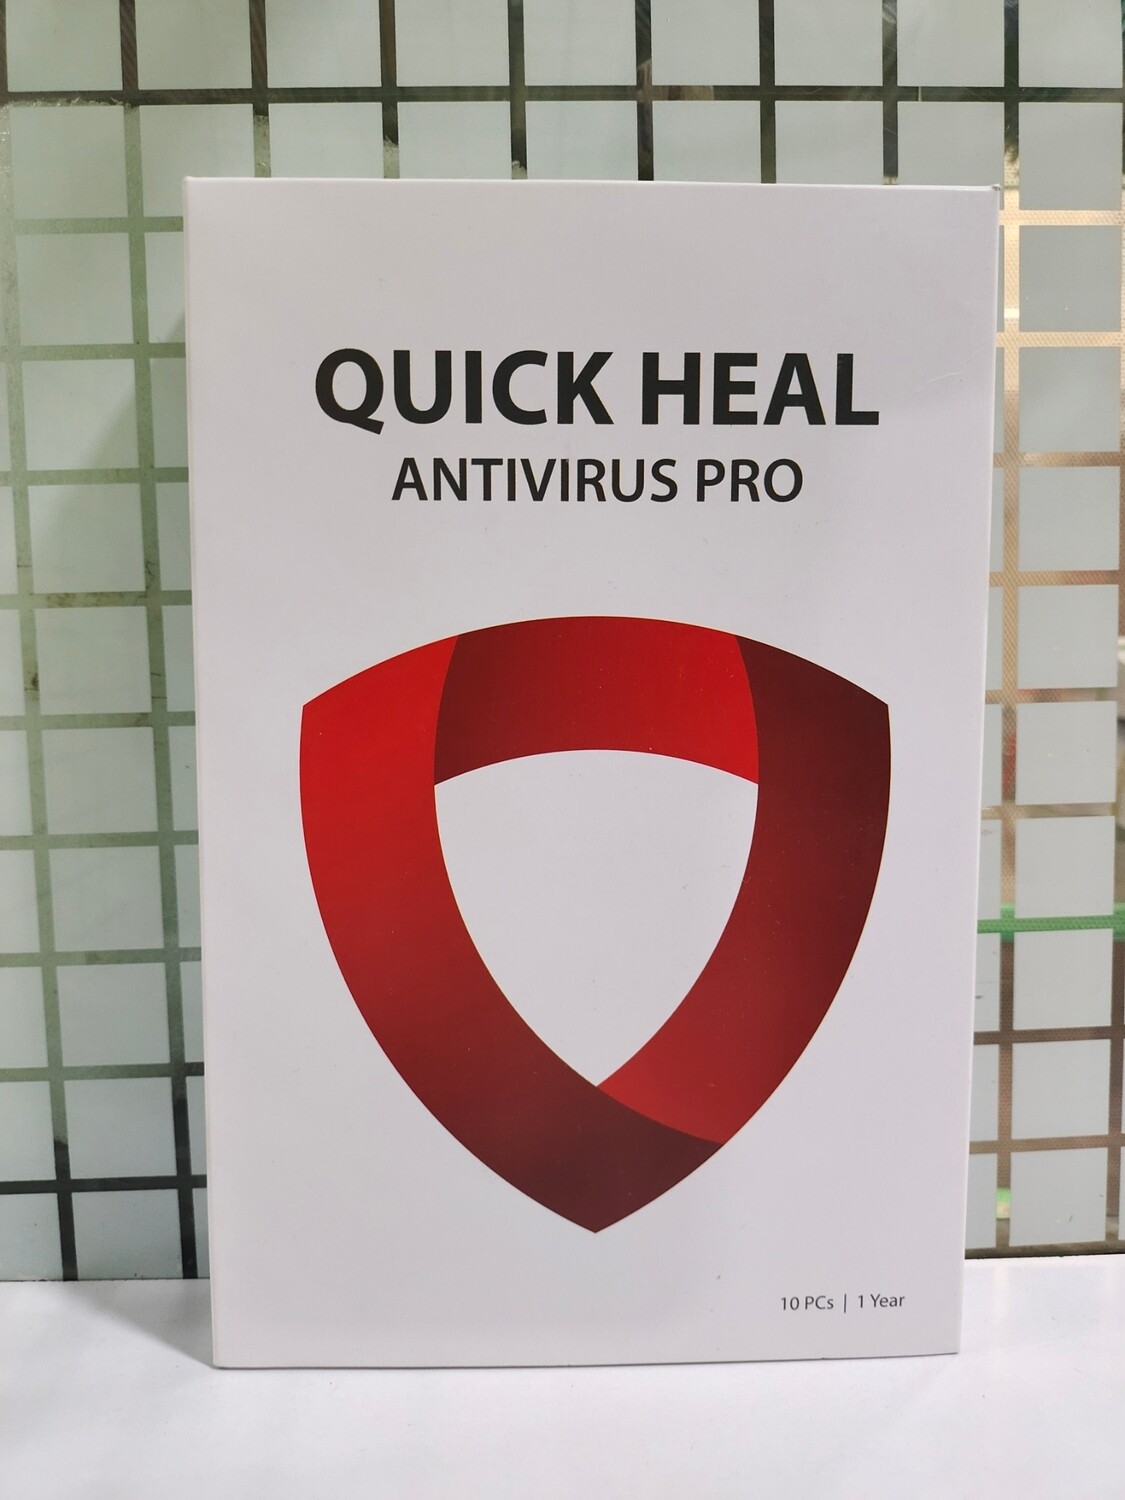 New, 10 User, 1 Year, Quick Heal Antivirus Pro